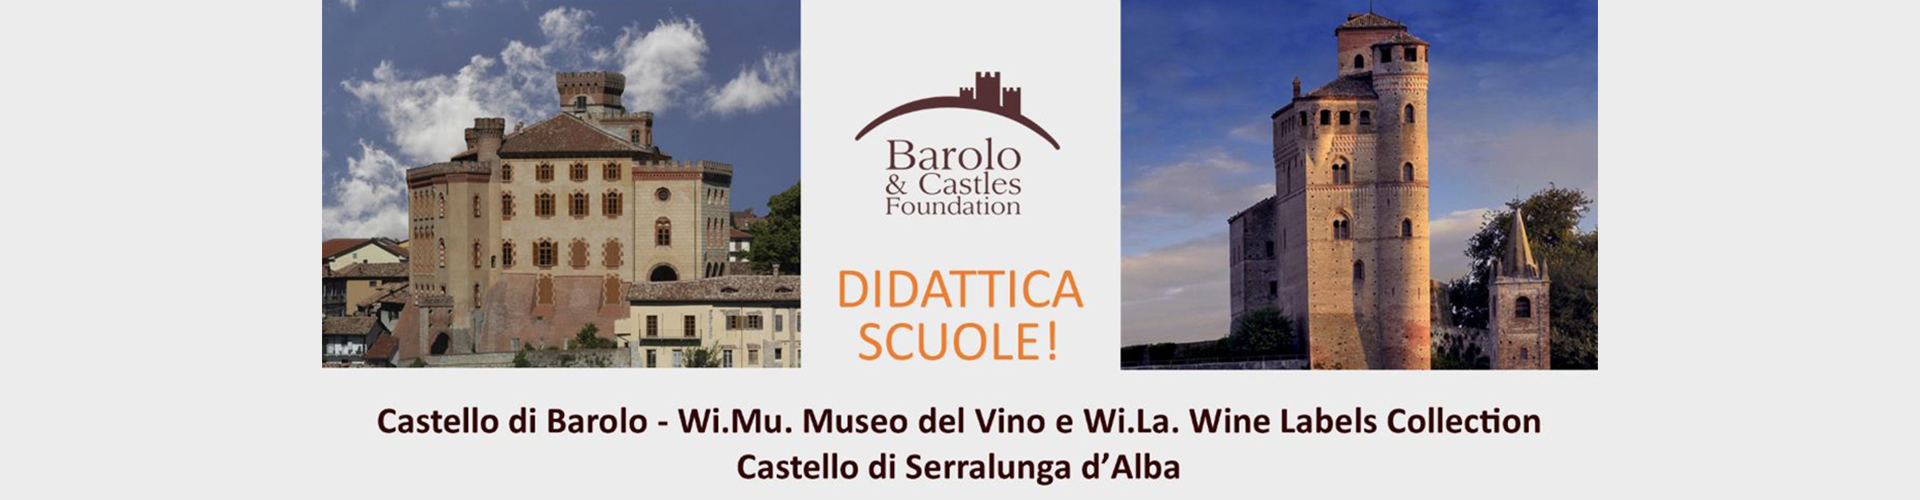 Barolo & Castles Foundation